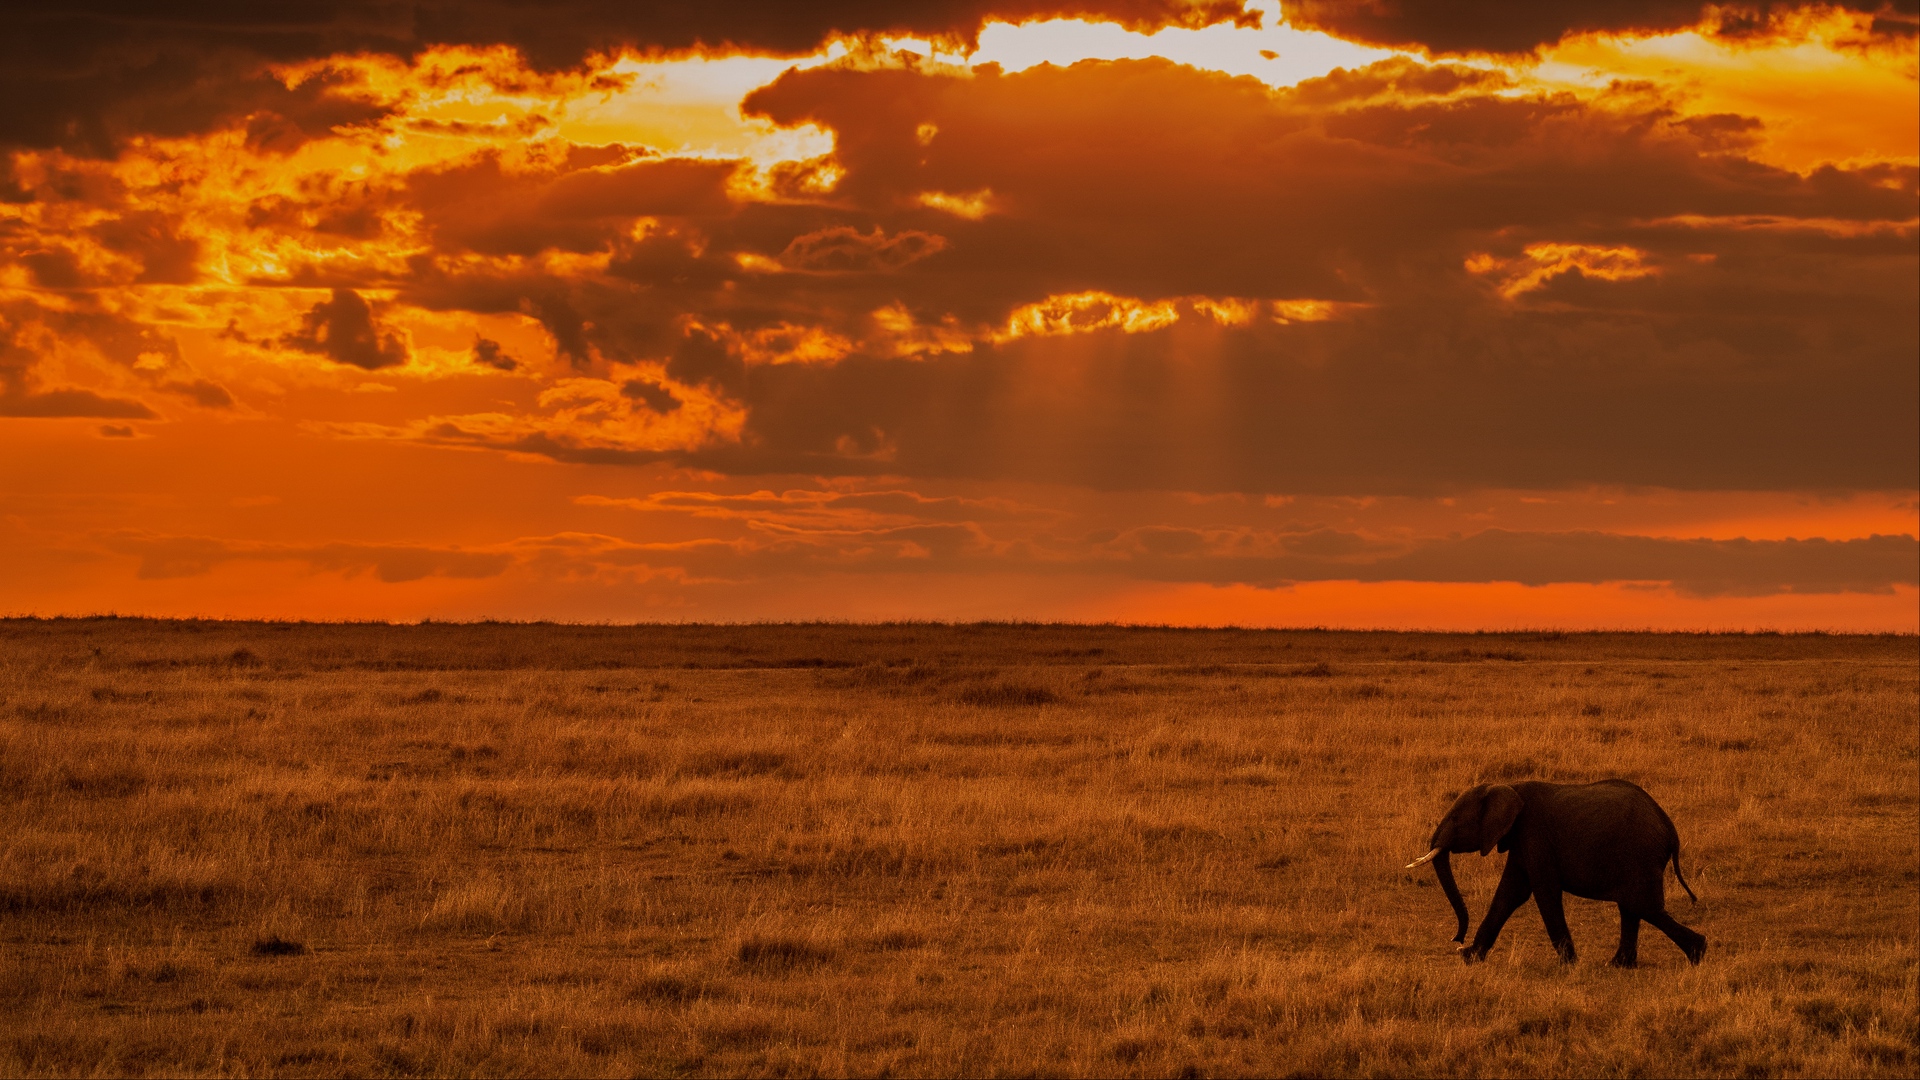 Wallpaper Elephant, Savanna, Sunset, Nature, Africa - Africa 4k - HD Wallpaper 